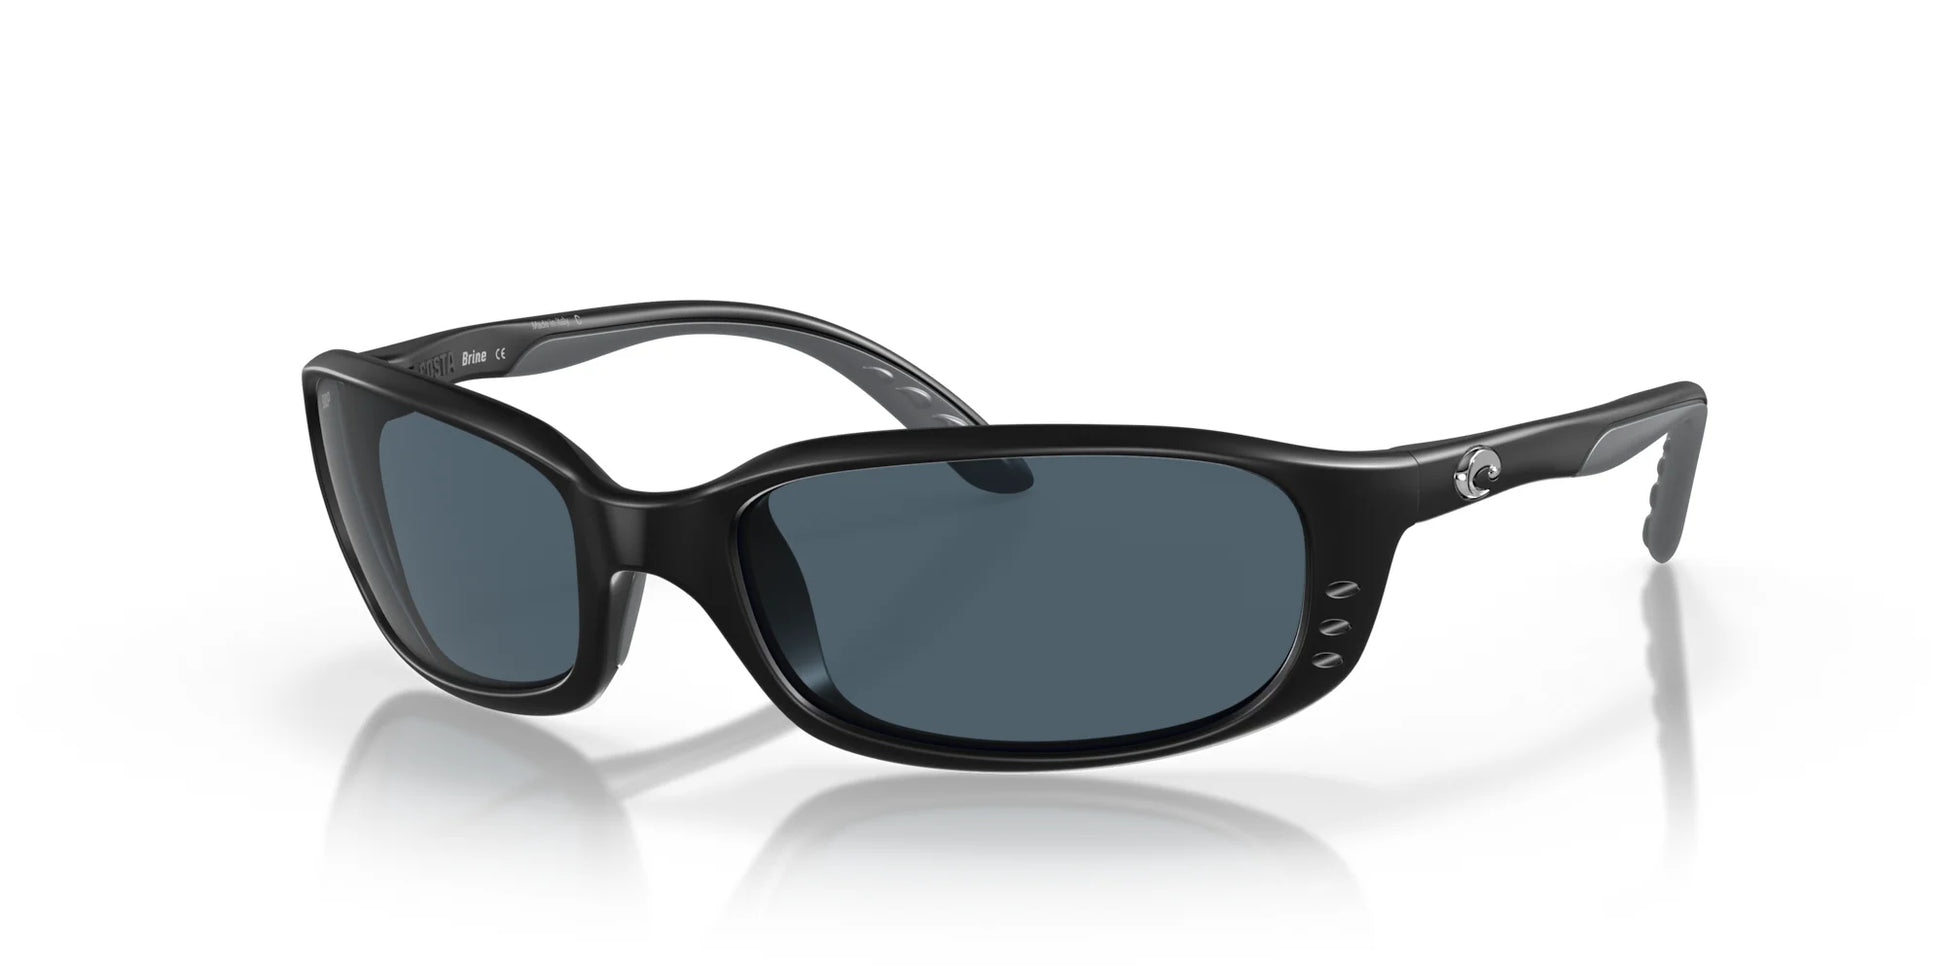 Costa BRINE 6S9017 Sunglasses Matte Black / Gray